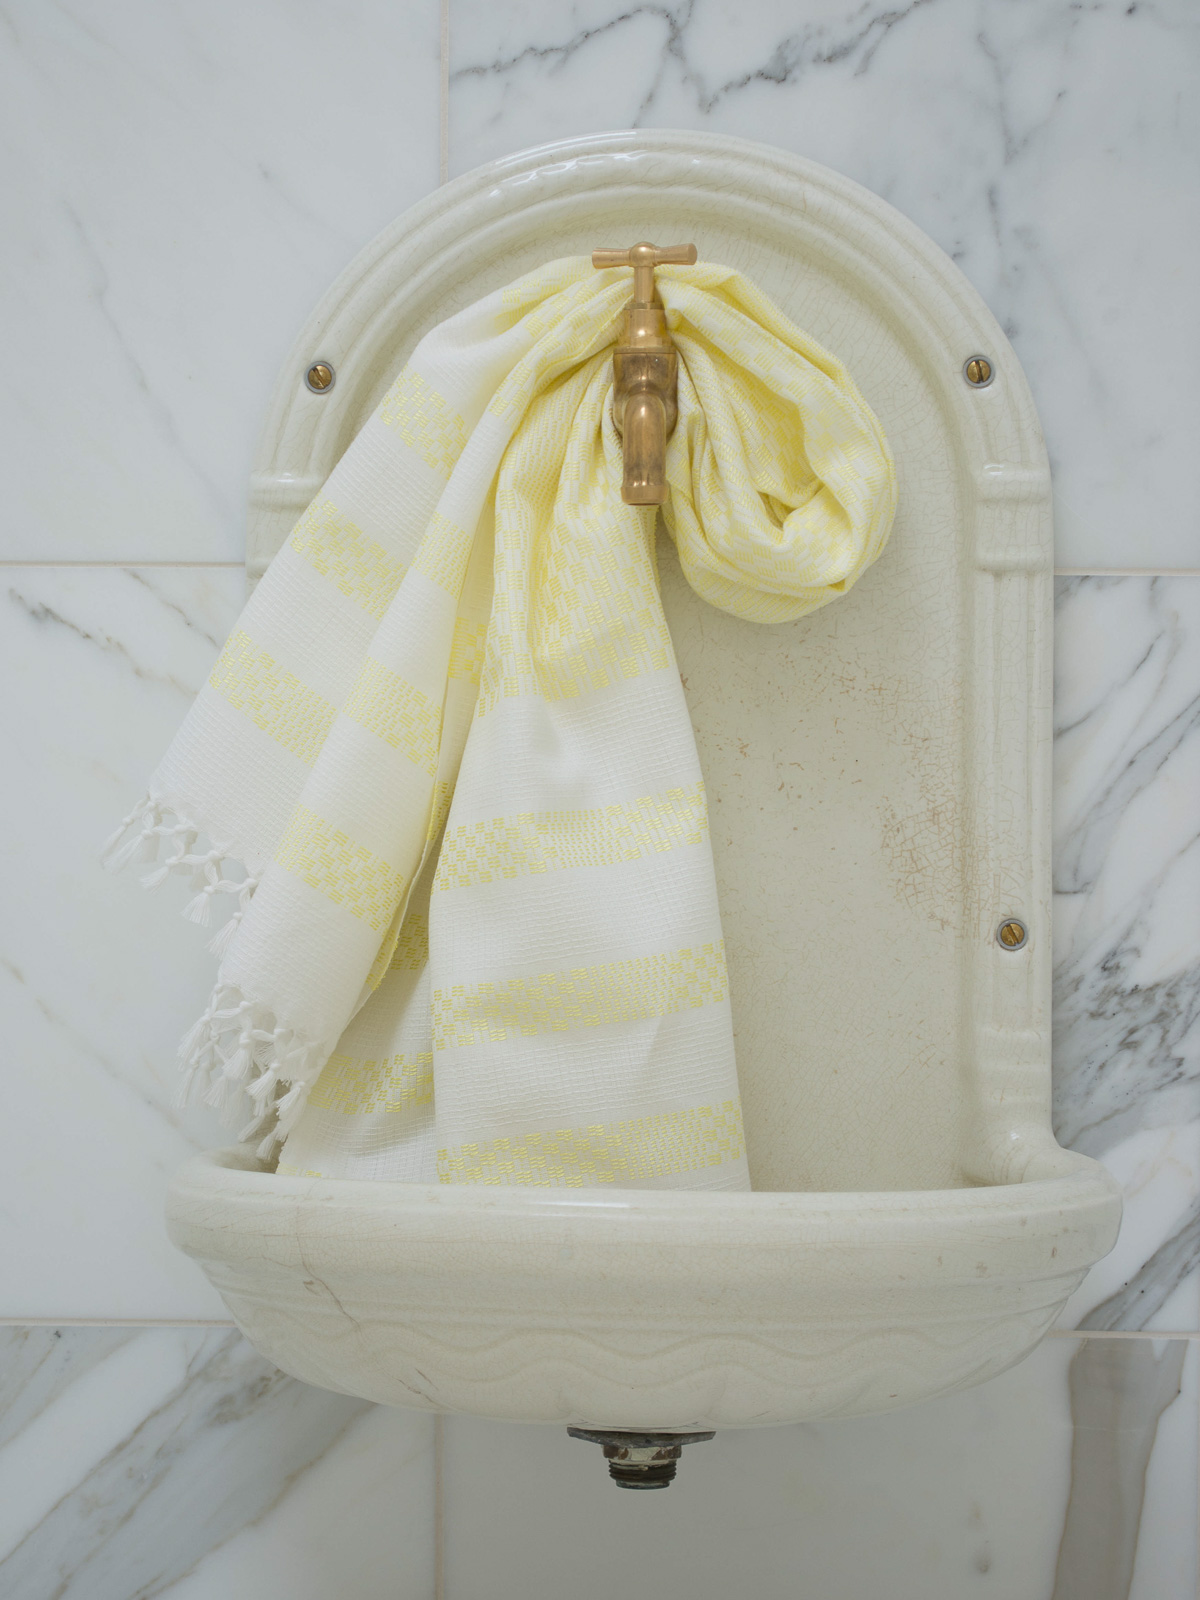 asciugamano giallo limone